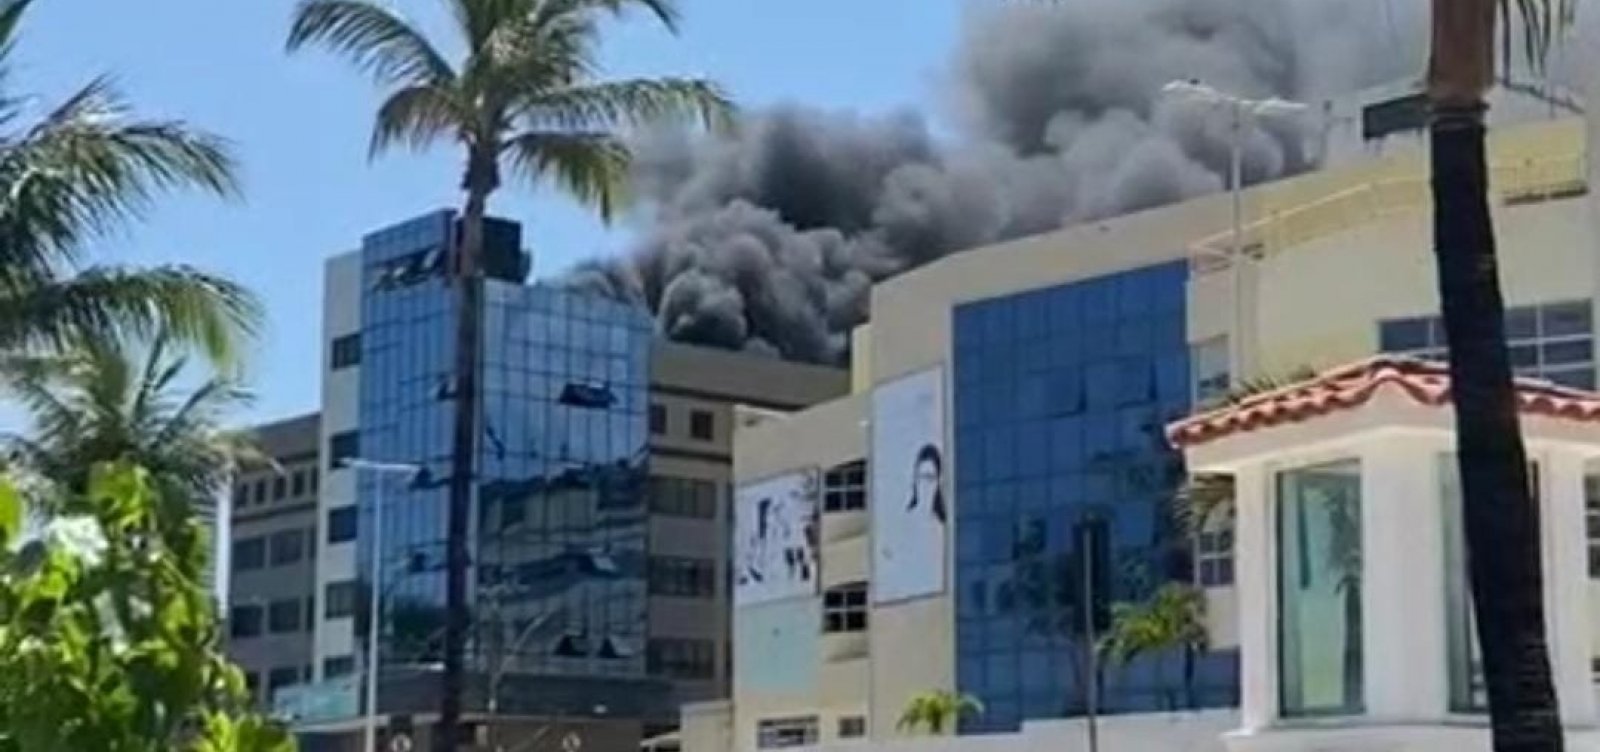 Incêndio atinge clínica Ápice, em Salvador